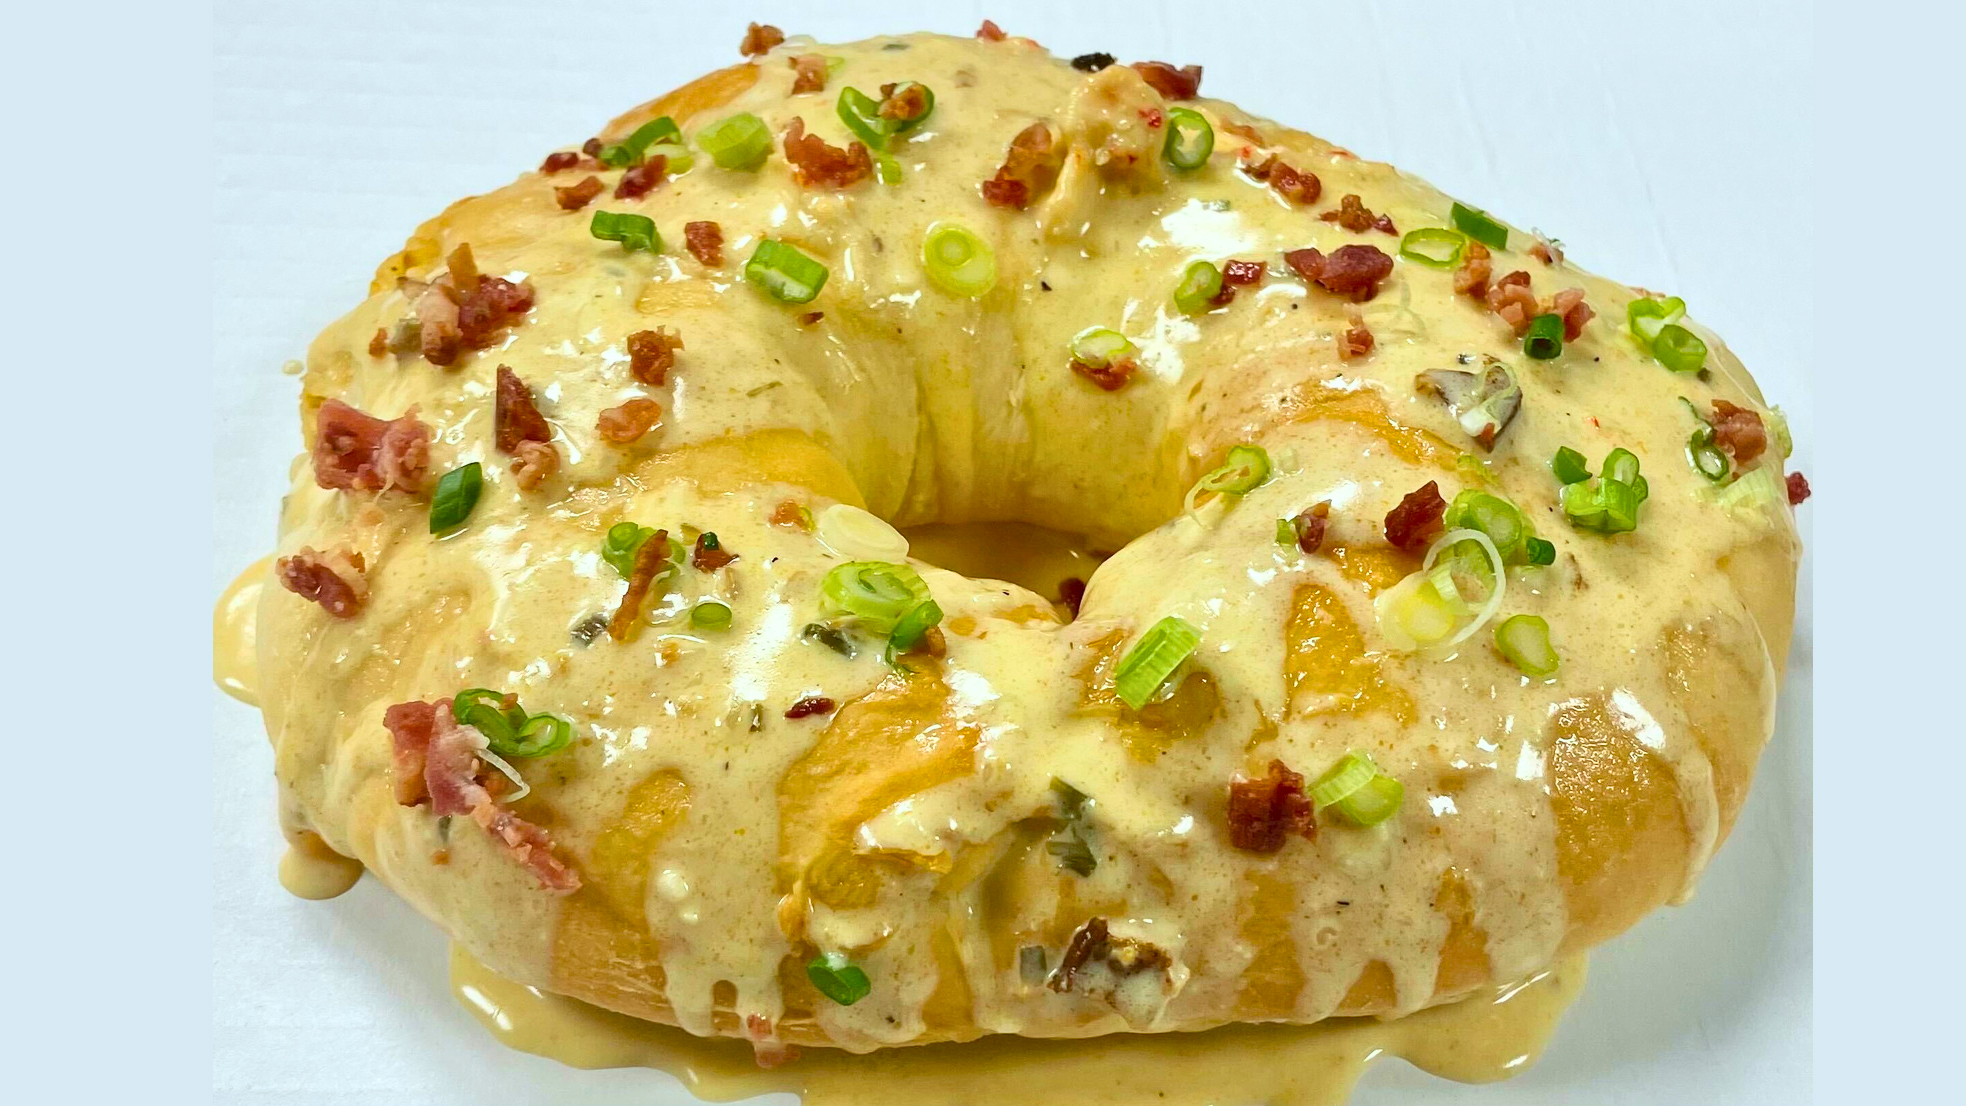 Crawfish King Cakes Bring More Dough to Alabama Business This Mardi Gras Season